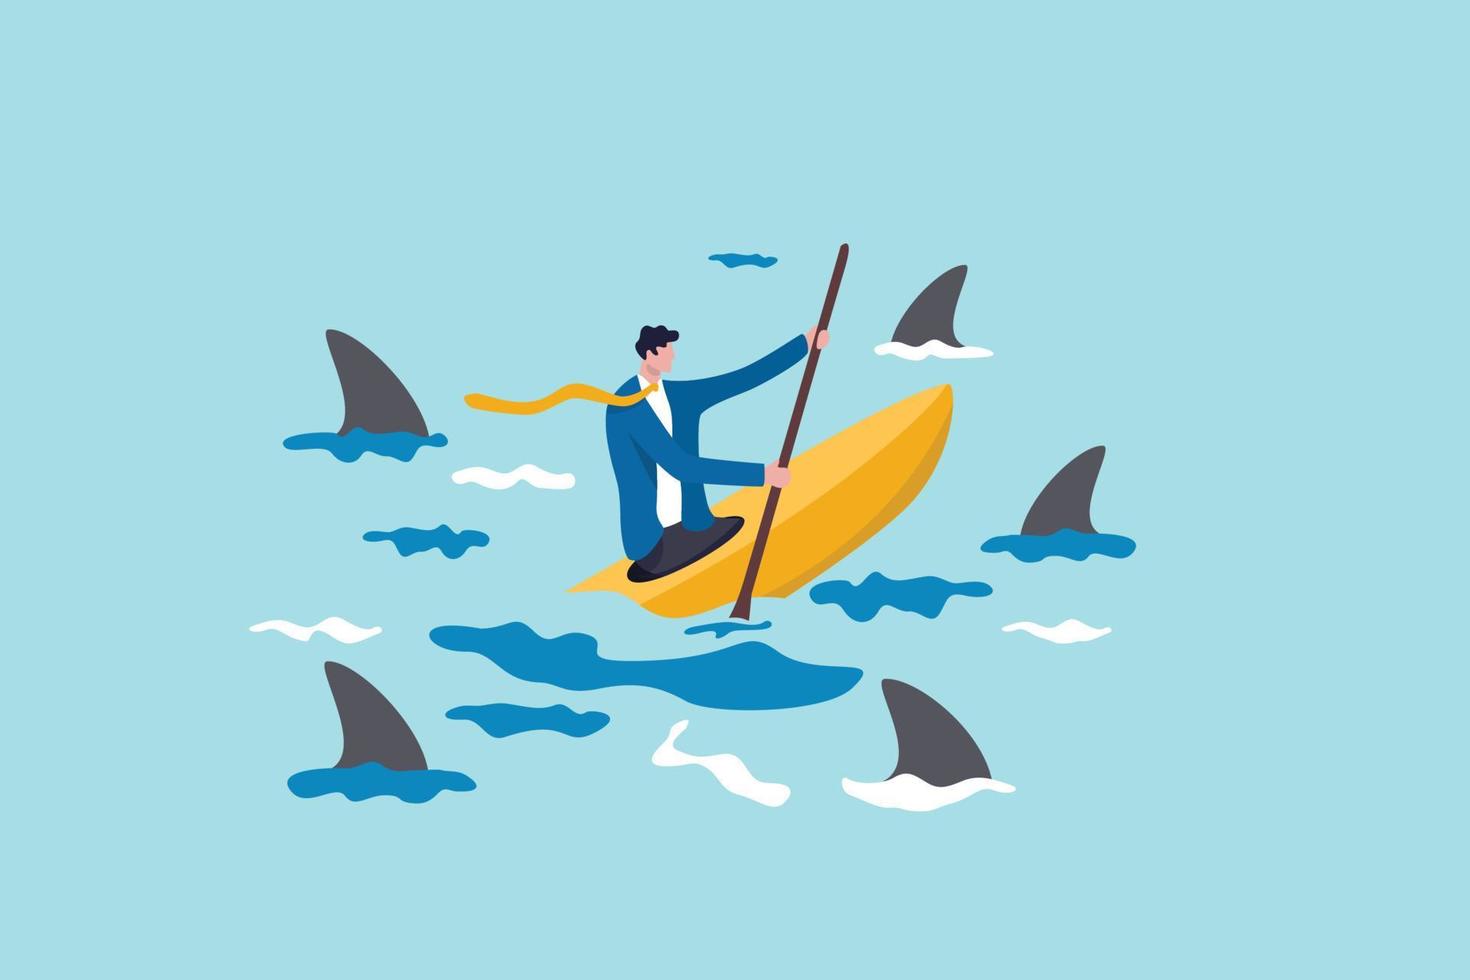 risktagare, utmaning för framgång, övervinna svårigheter eller problem i kris eller entreprenörskap, beslutsamhet eller motgångskoncept, förtroende affärsman som seglar kajakfartyg bland riskfyllda hajar. vektor